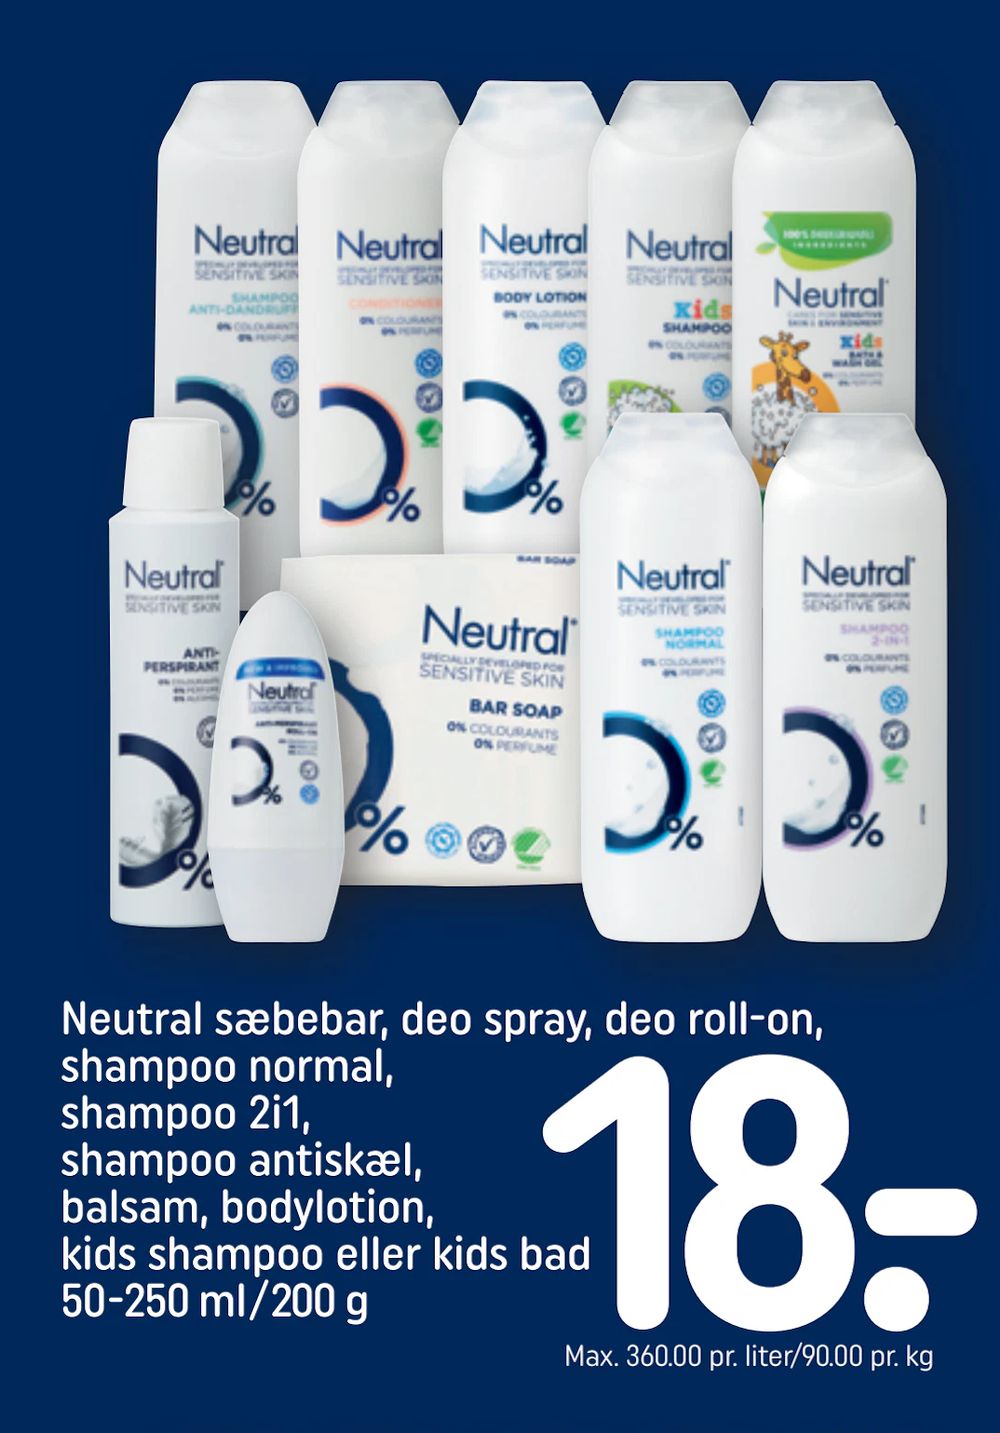 Tilbud på Neutral sæbebar, deo spray, deo roll-on, shampoo normal, shampoo 2i1, shampoo antiskæl, balsam, bodylotion, kids shampoo eller kids bad 50-250 ml/200 g fra REMA 1000 til 18 kr.